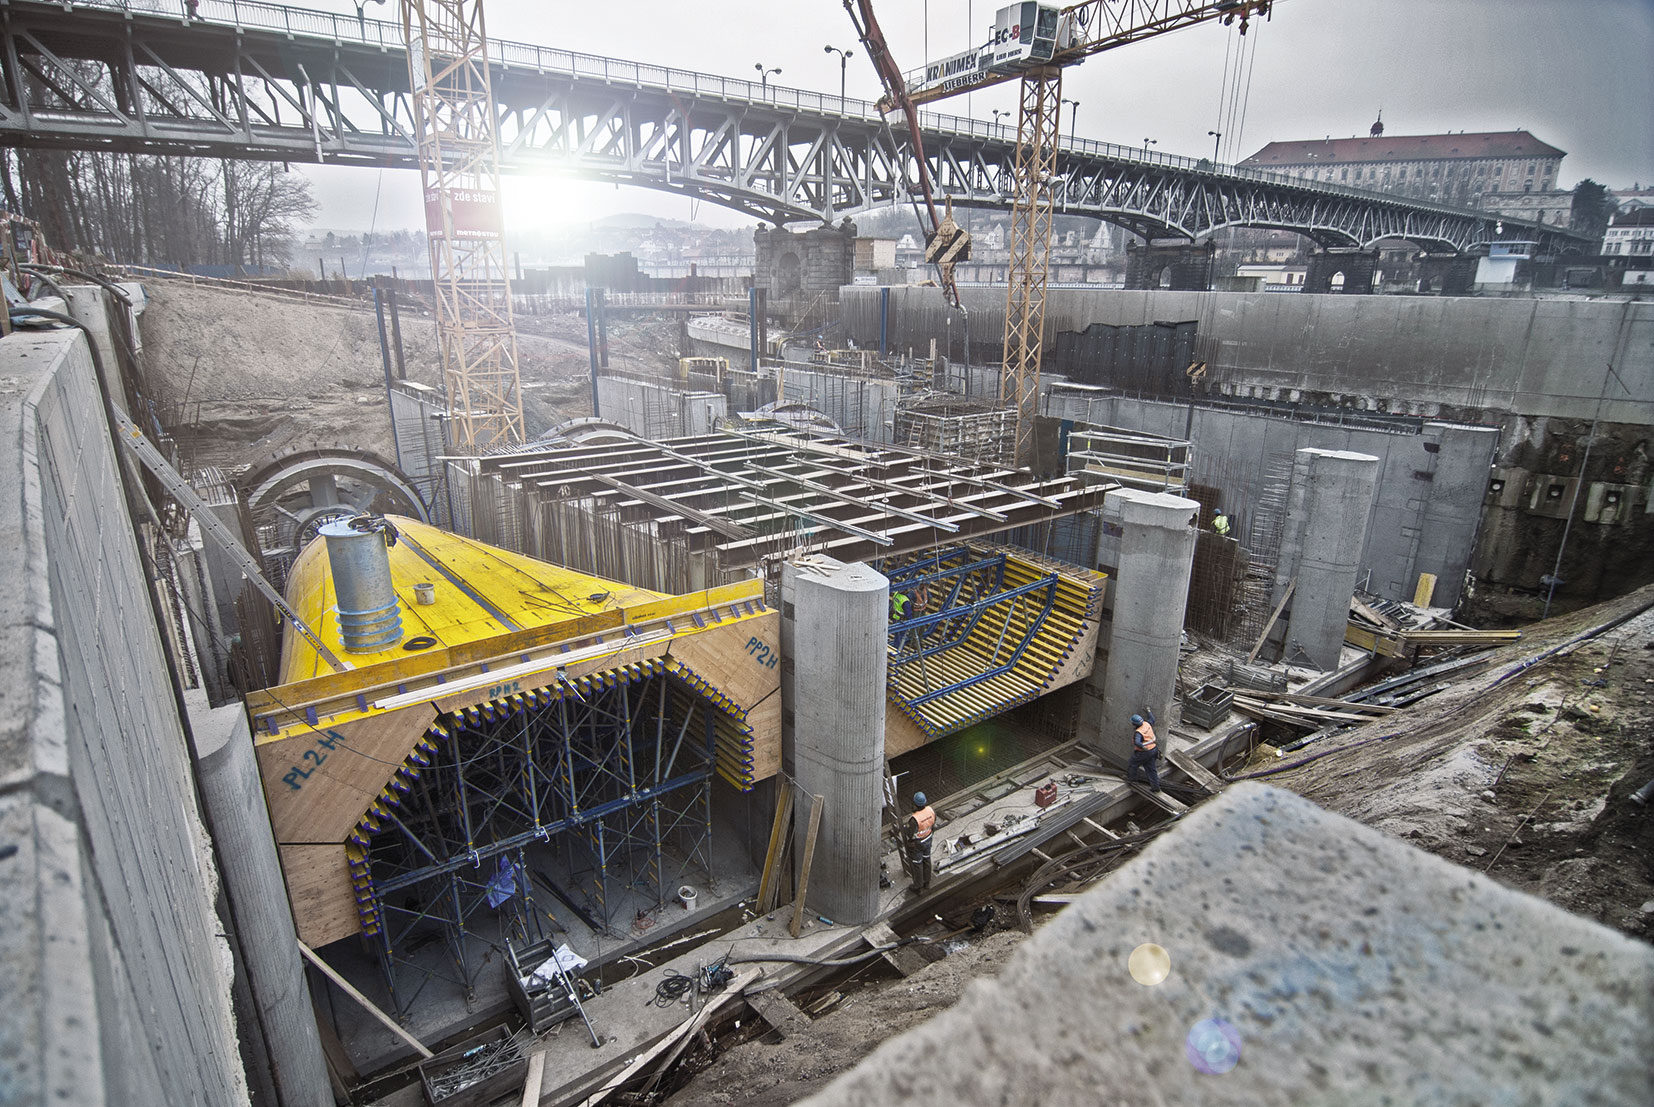 Zvláštní bednění pro betonáž vodní elektrárny v Roudnici nad Labem formovalo savky, jejichž tvar přechází z čtyřhranného vstupu do kruhového výstupu.